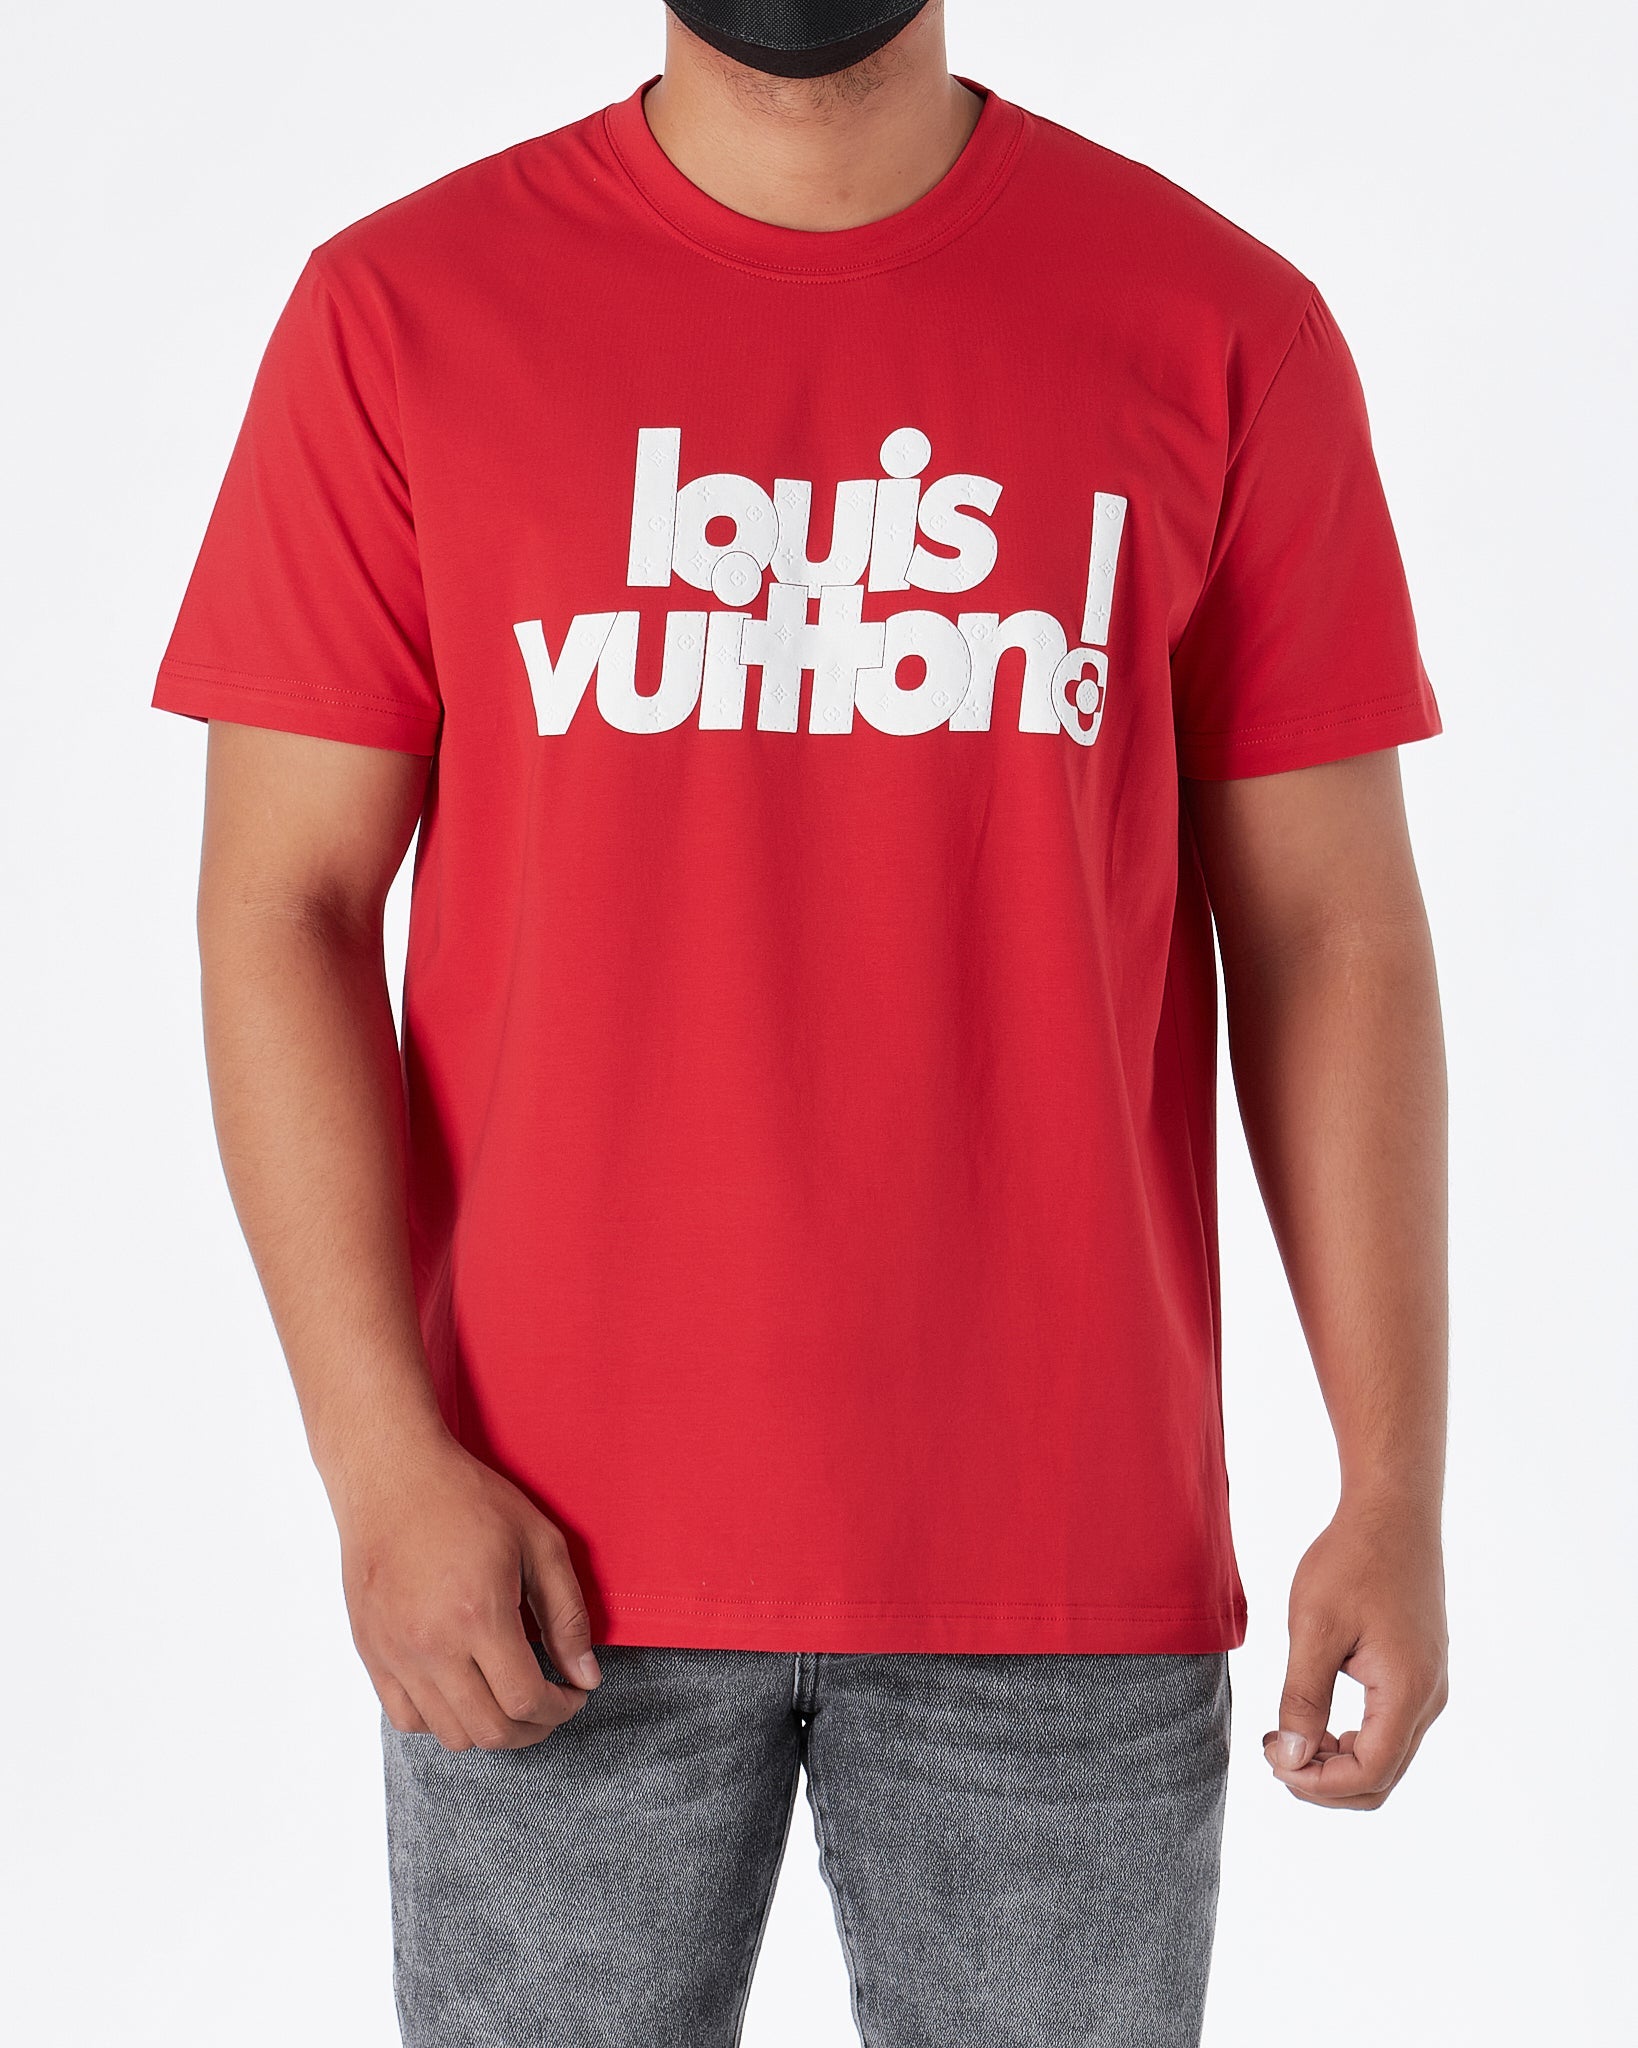 Louis Vuitton 3d t shirt  3d t shirts, Orange t shirts, Louis vuitton men